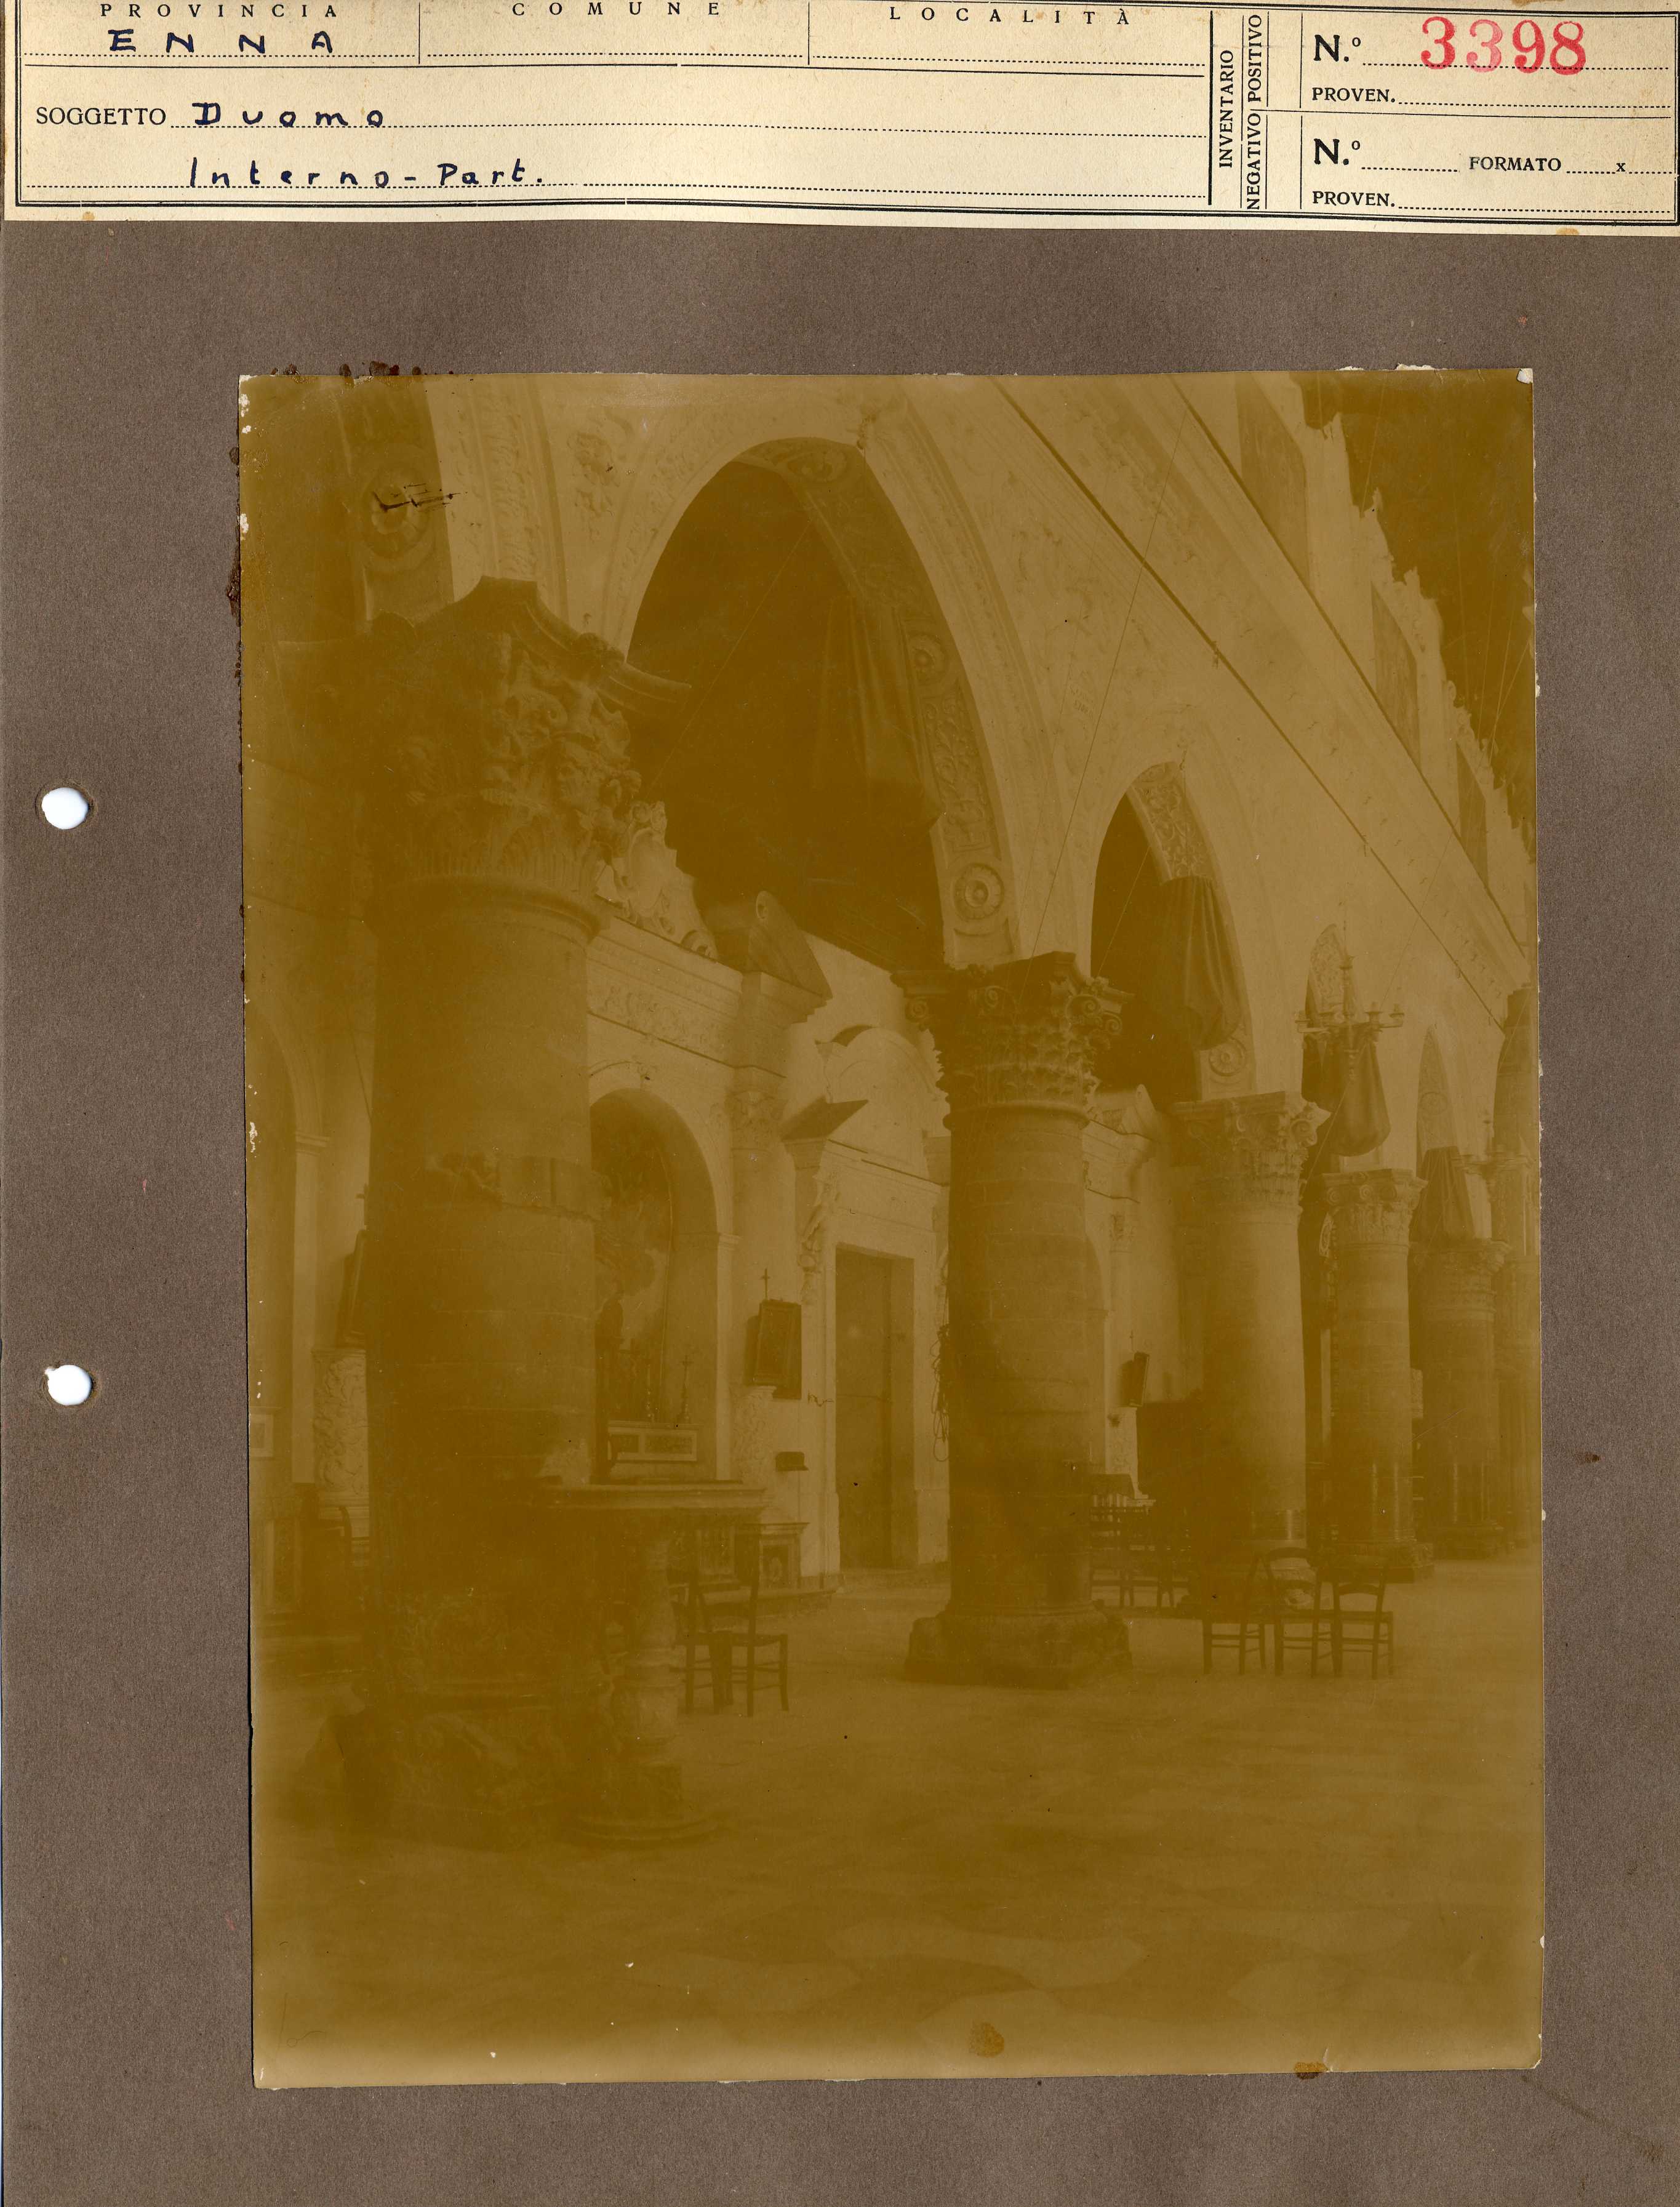 Sicilia - Enna – Architettura religiosa - Duomo (positivo, elemento-parte componente, scheda di supporto) di Anonimo <1901-1950> (fine/ inizio XIX-XX)